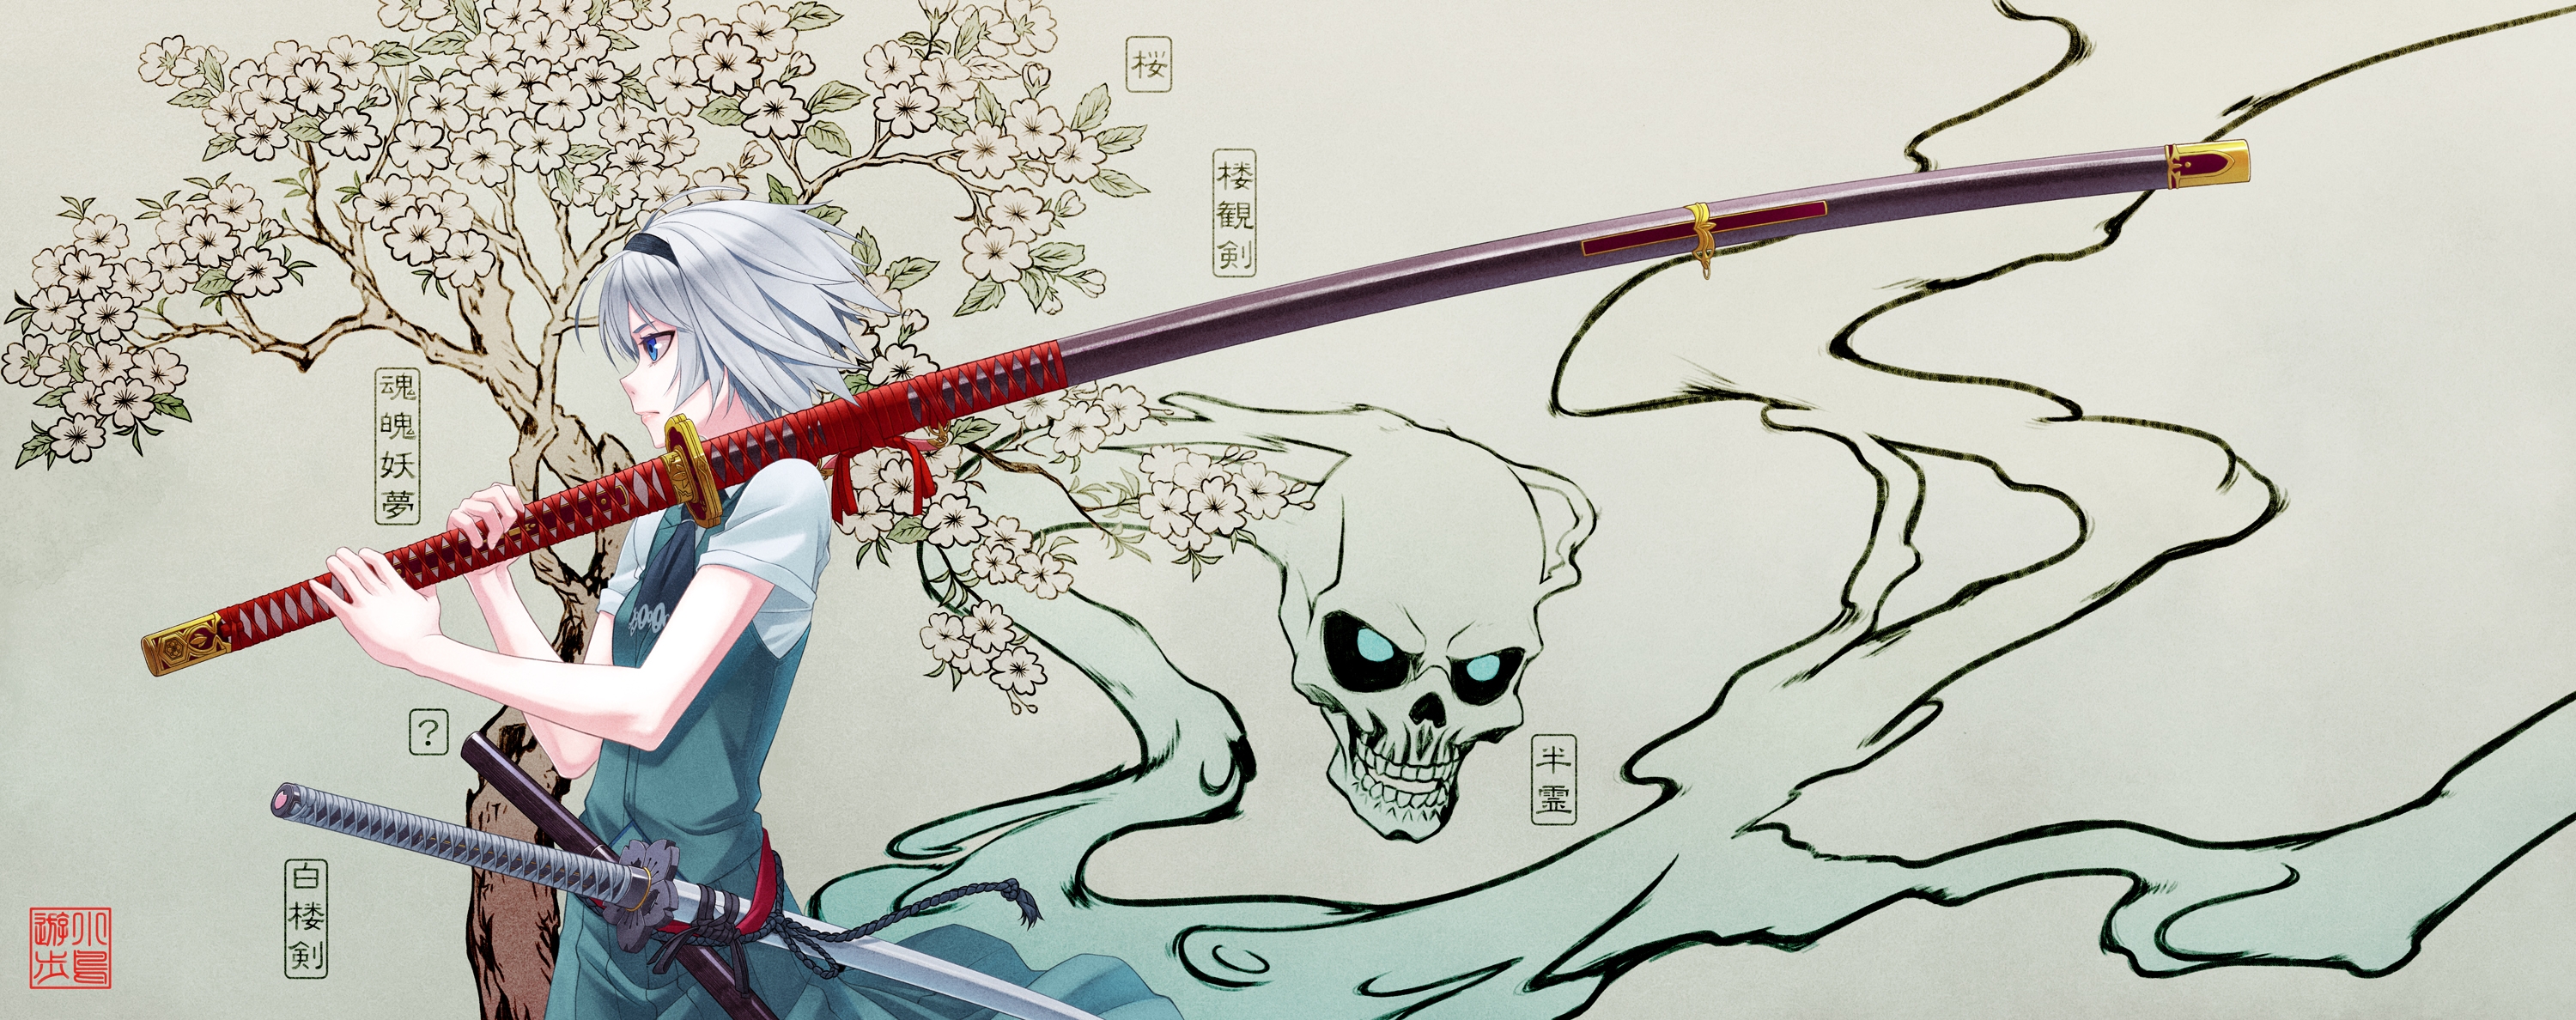 Wallpapers an anime anime girl katana on the desktop